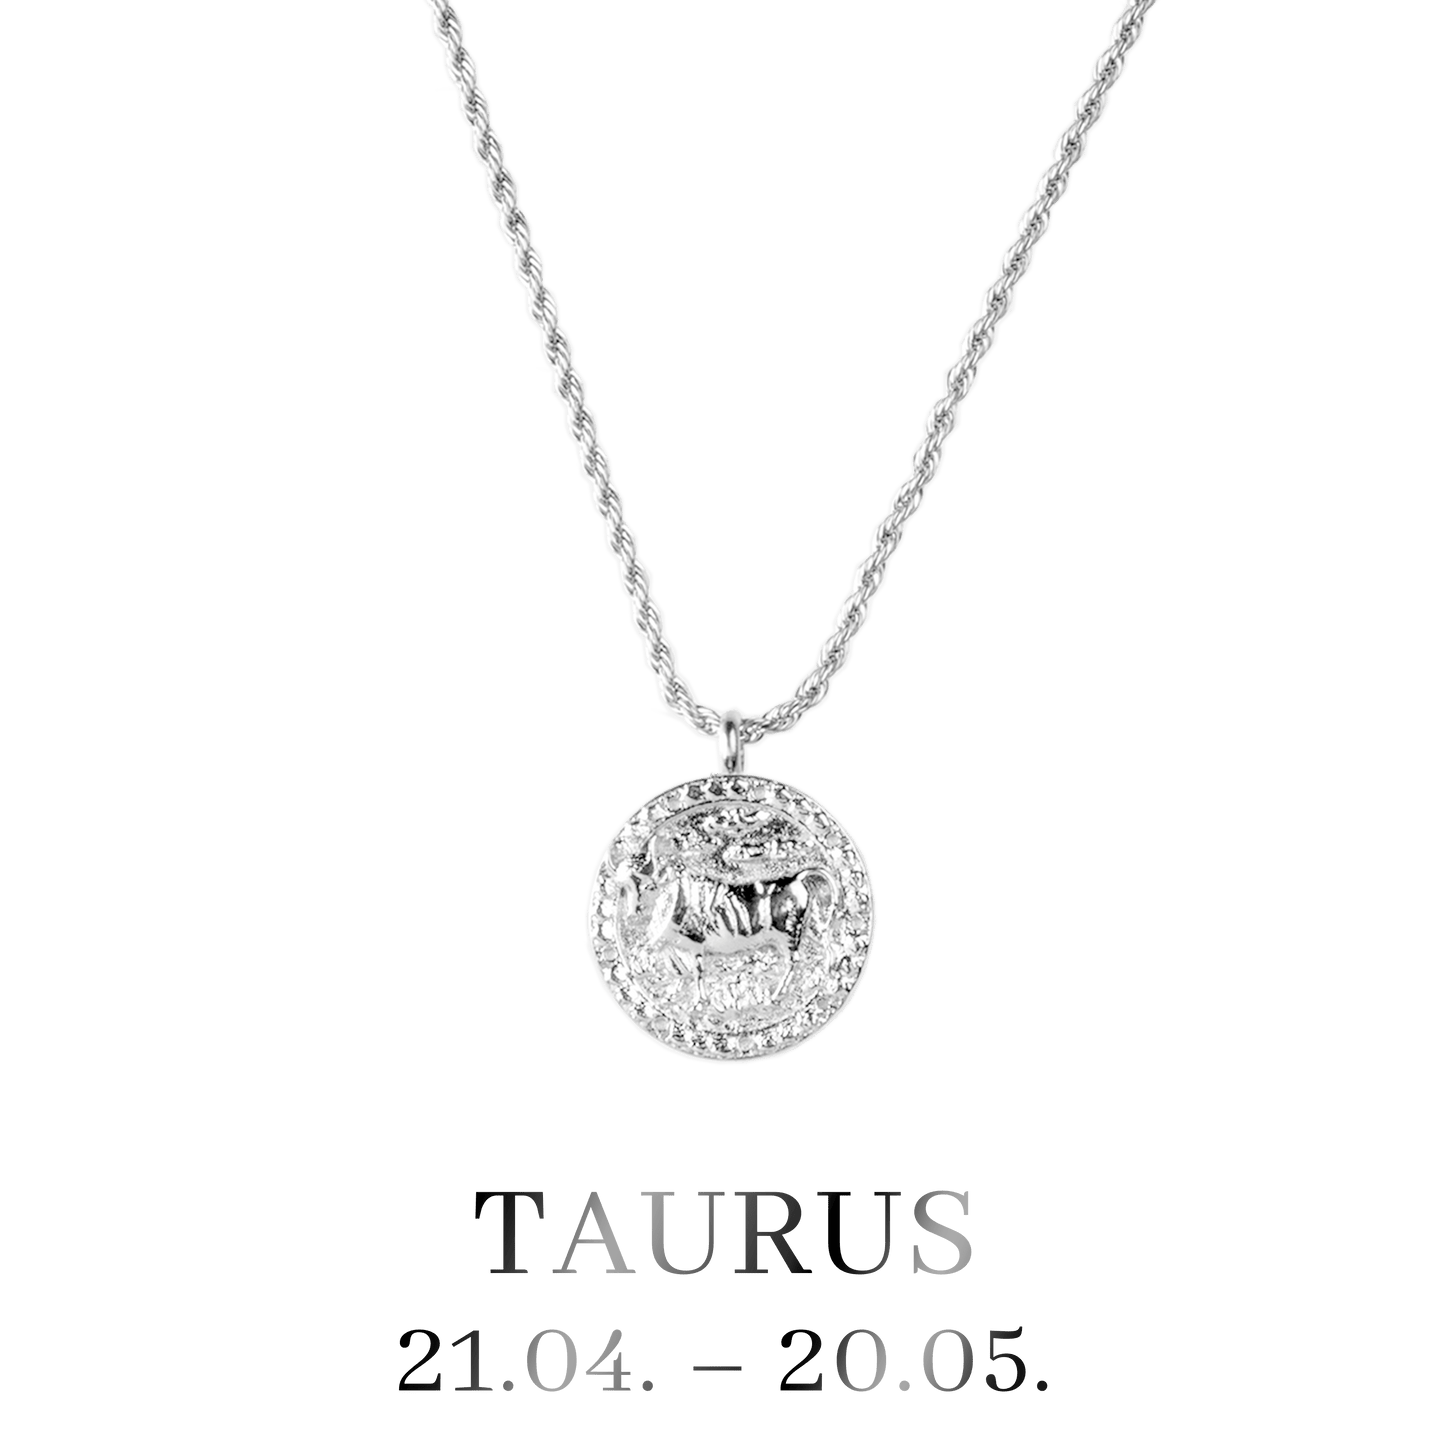 Taurus / Stier Necklace Silber